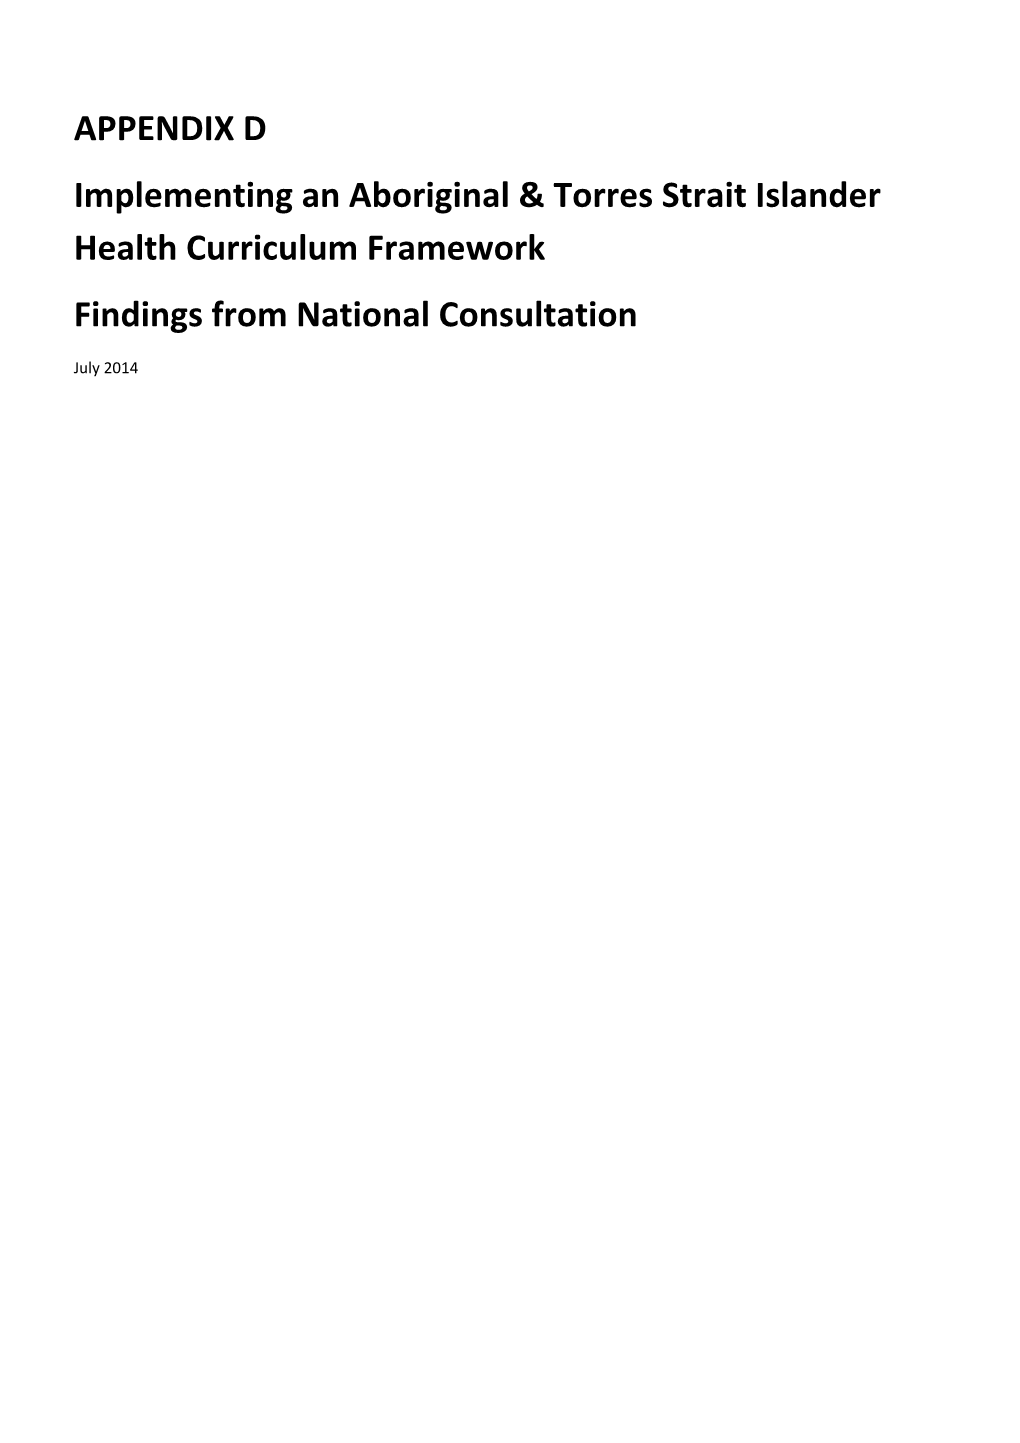 Implementing an Aboriginal & Torres Strait Islander Health Curriculum Framework